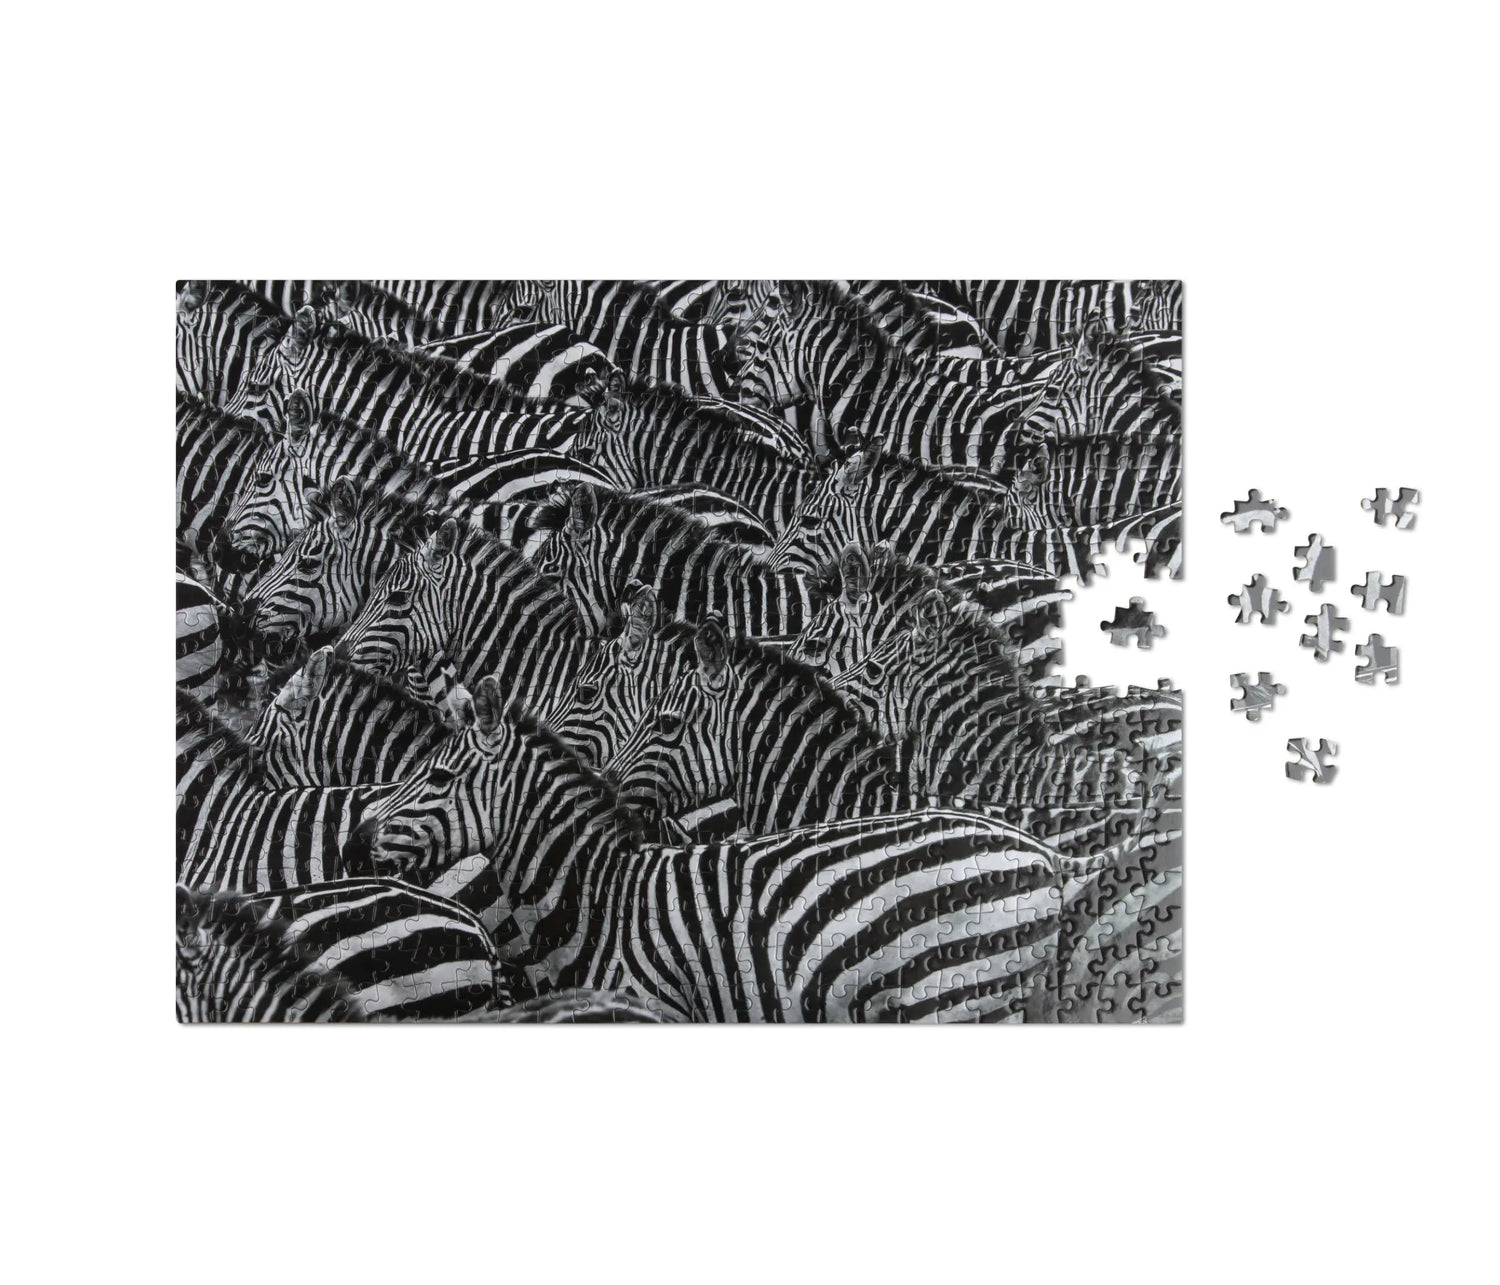 Zebra puzzle, 500 pieces